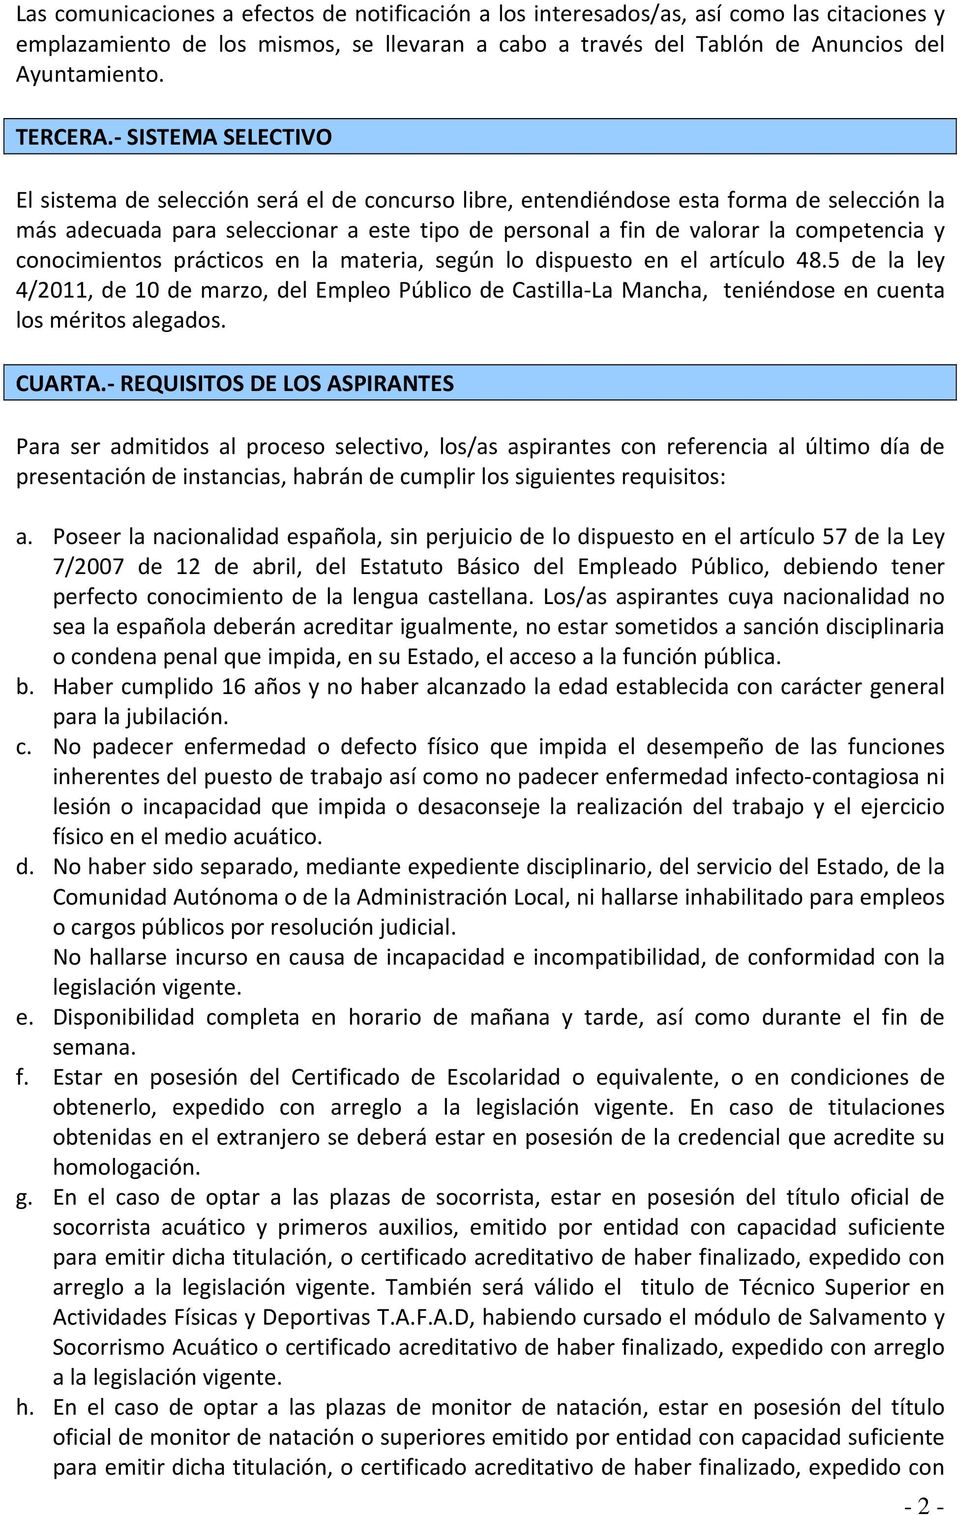 conocimientos prácticos en la materia, según lo dispuesto en el artículo 48.5 de la ley 4/2011, de 10 de marzo, del Empleo Público de Castilla-La Mancha, teniéndose en cuenta los méritos alegados.